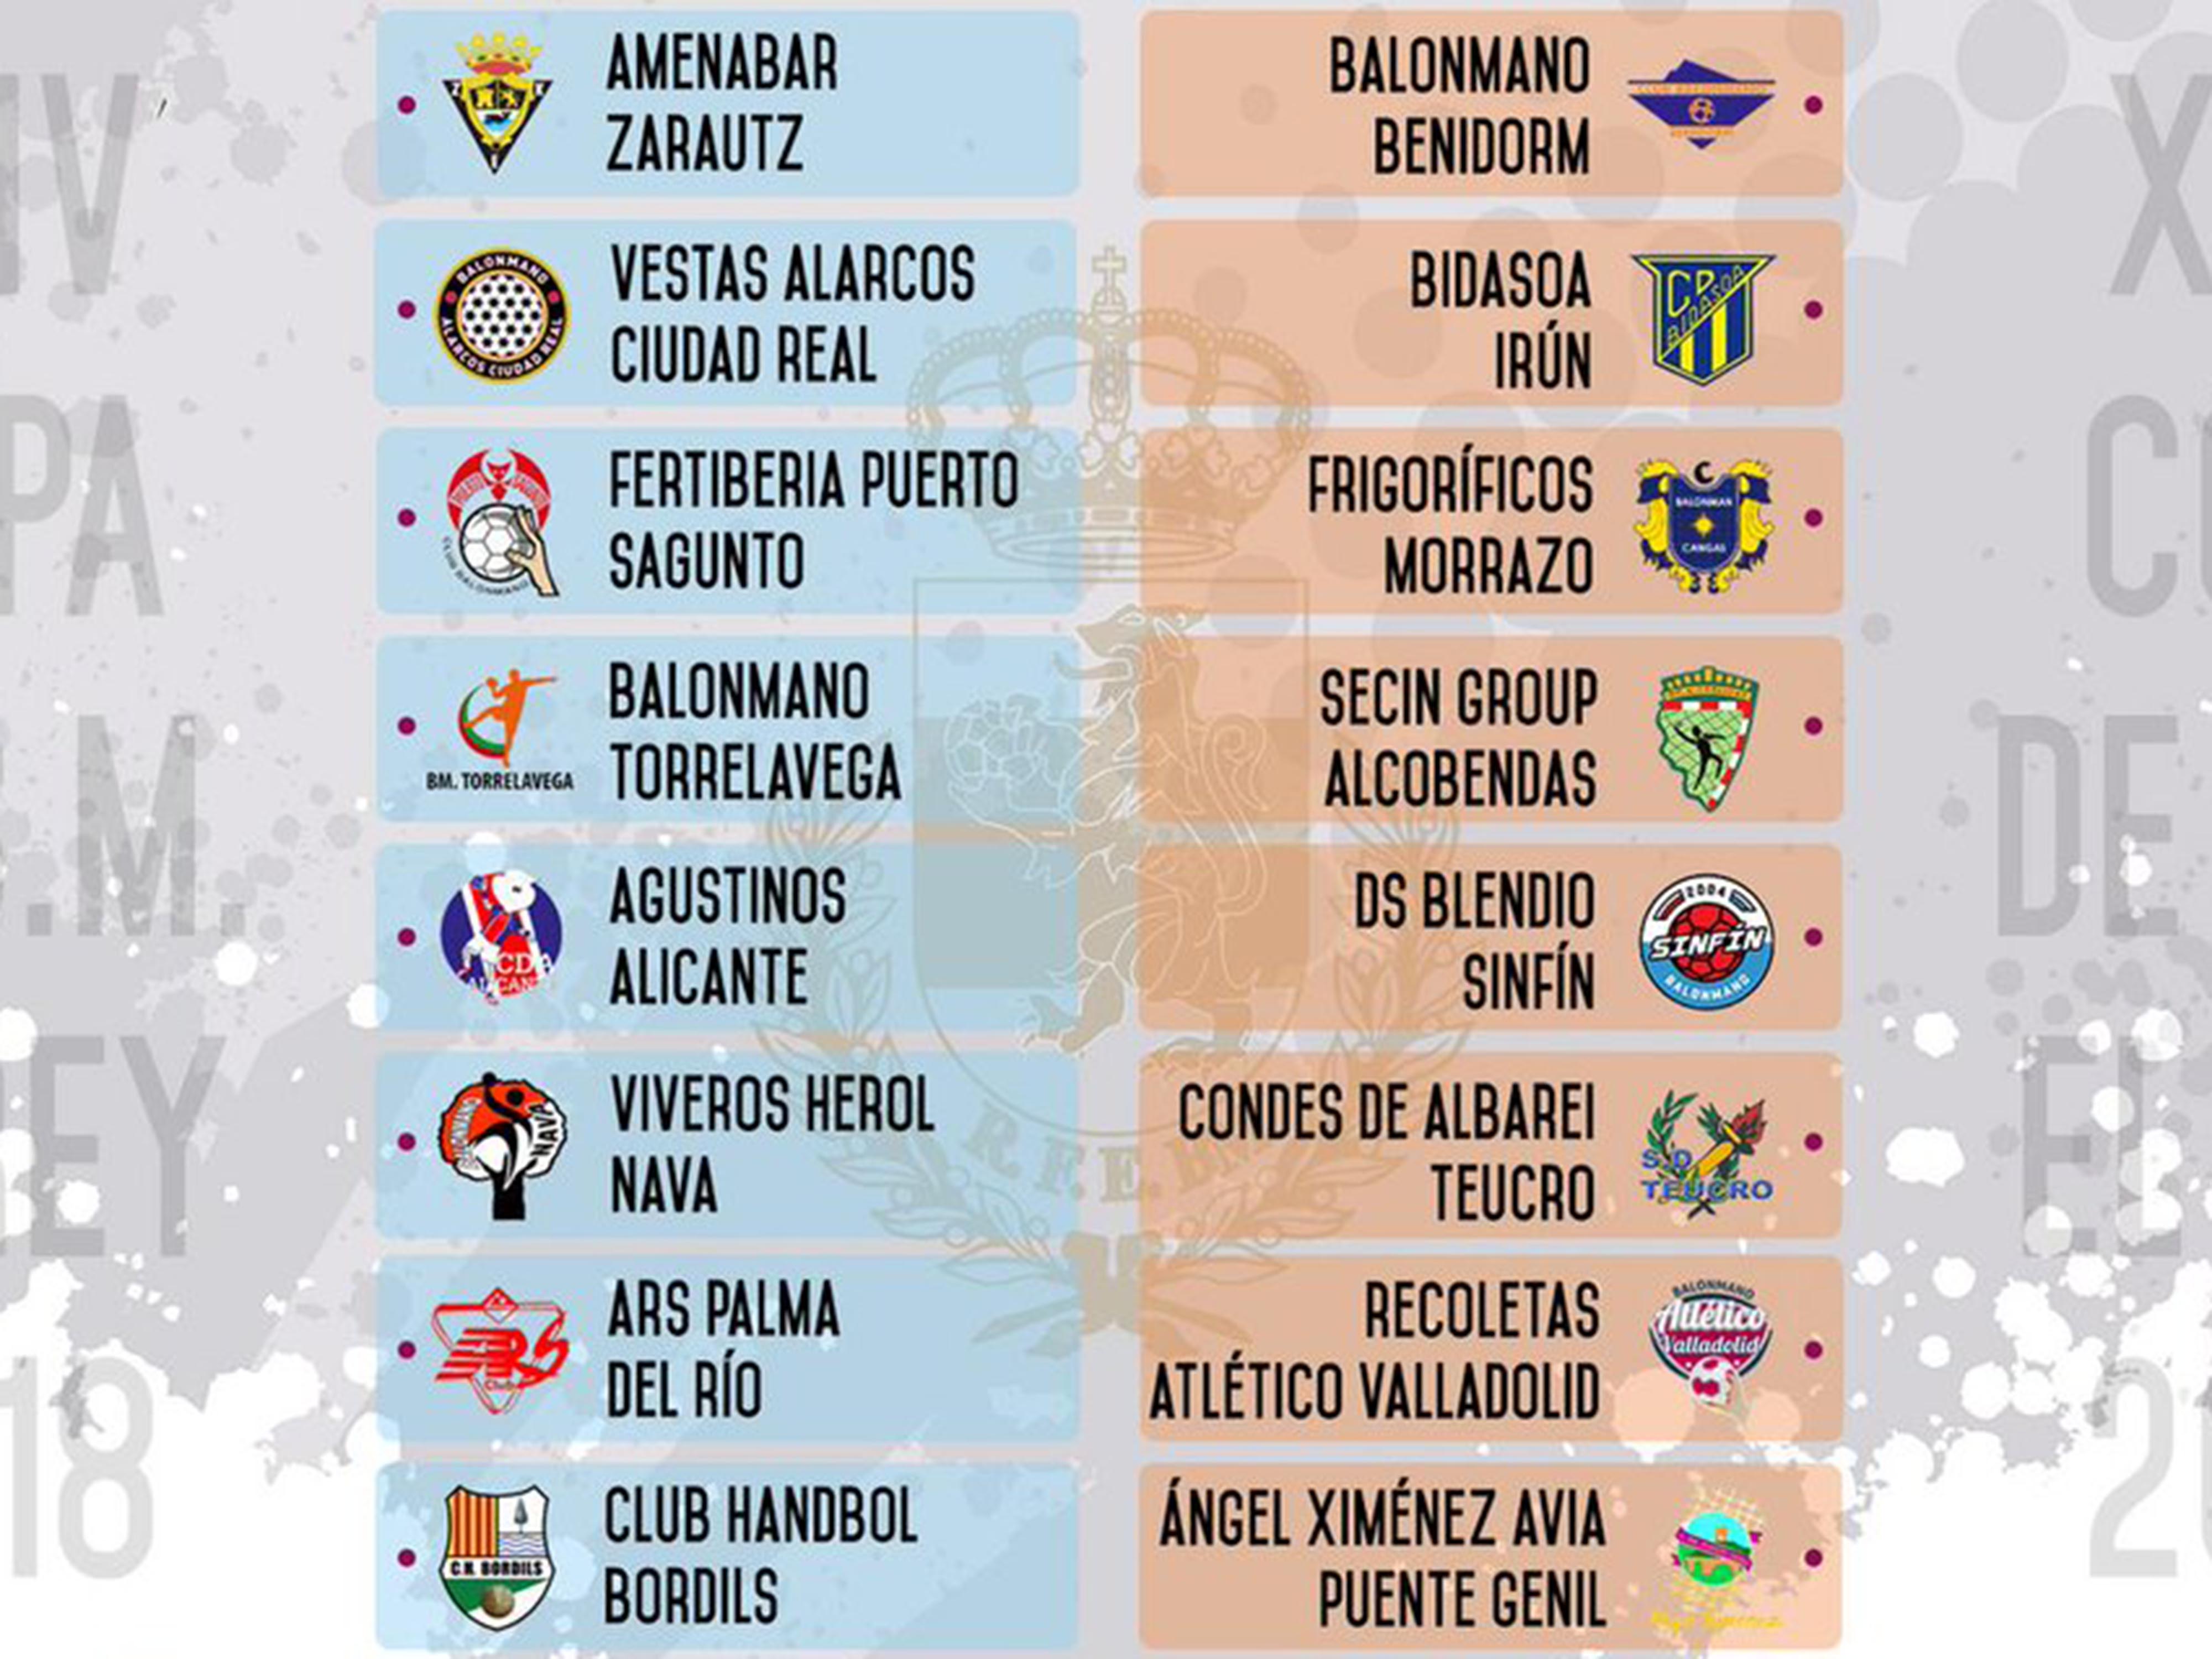 ARS Palma del Río, rival del Recoletas Atlético Valladolid en la segunda eliminatoria de la Copa del Rey